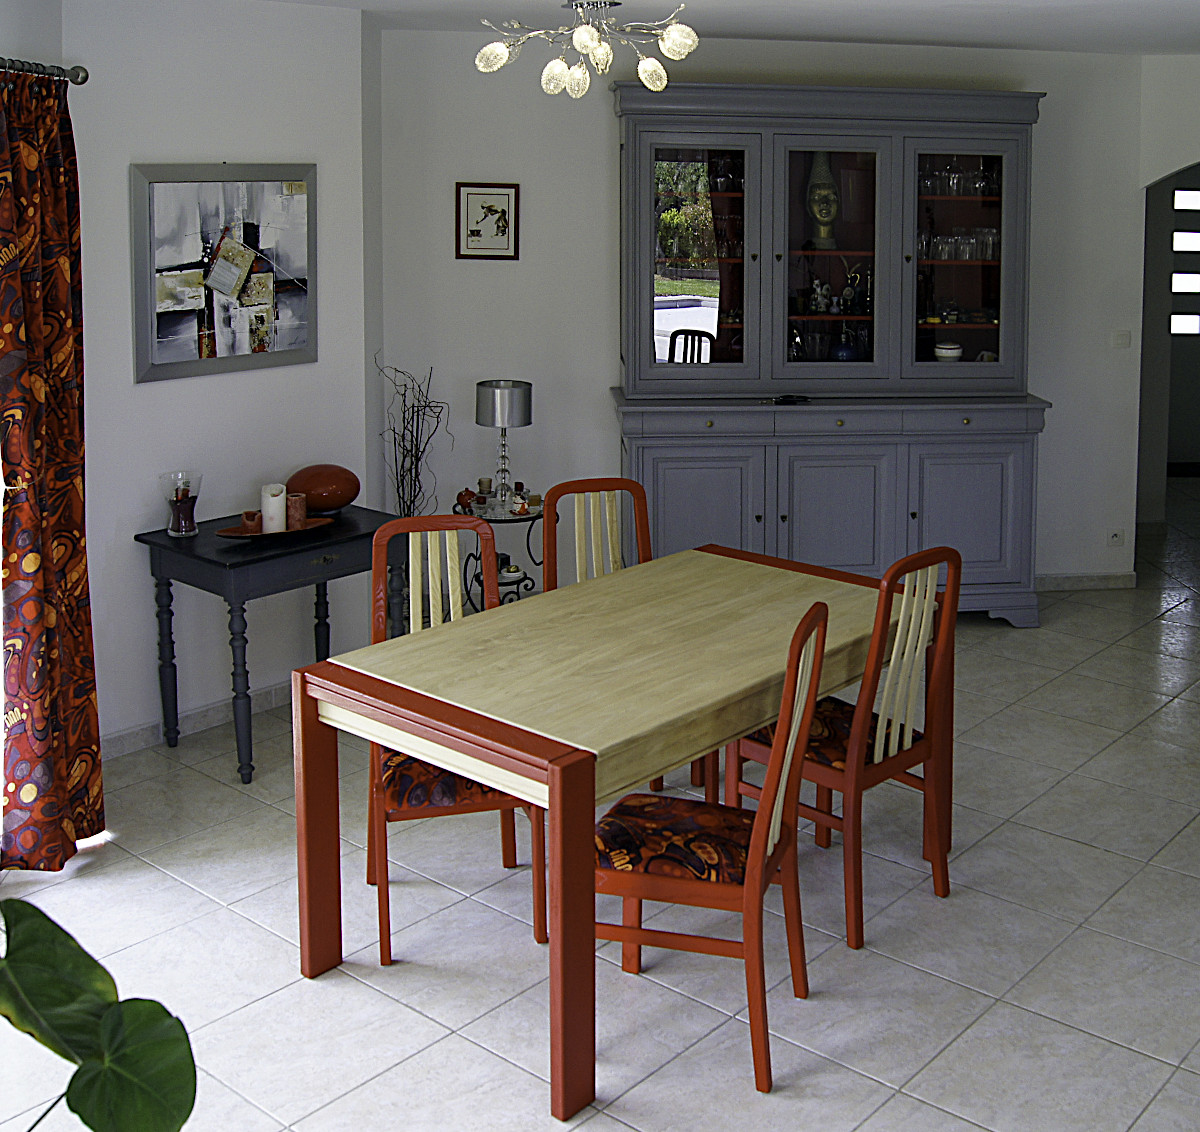 Salle à manger et chaises retravaillée en rouge et bois.